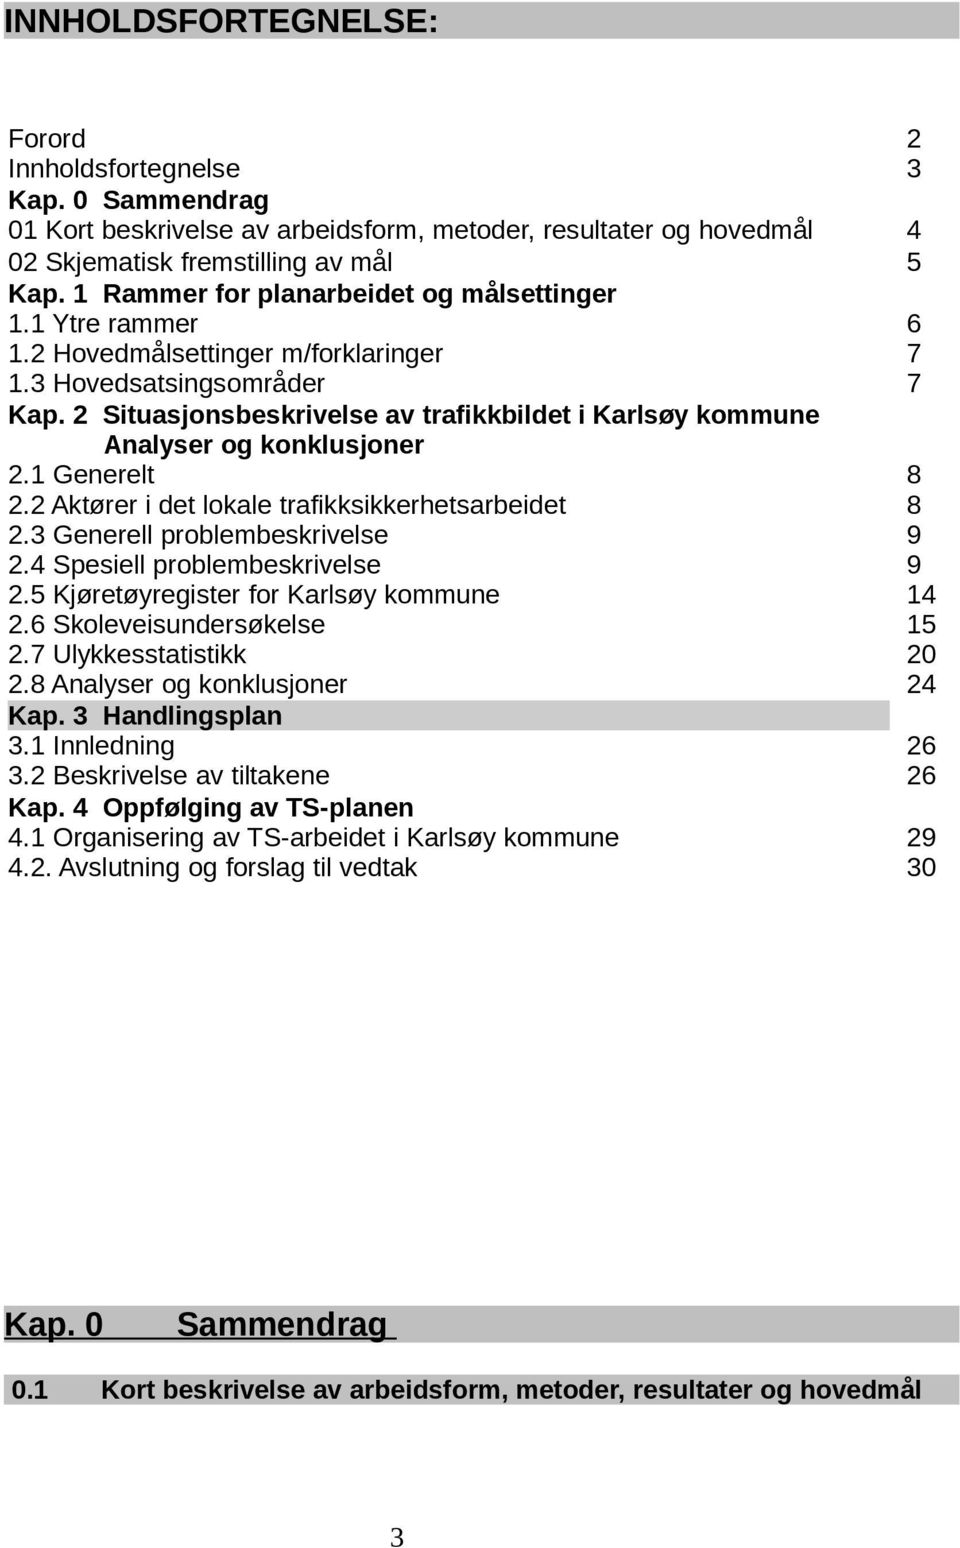 2 Situasjonsbeskrivelse av trafikkbildet i Karlsøy kommune Analyser og konklusjoner 2.1 Generelt 8 2.2 Aktører i det lokale trafikksikkerhetsarbeidet 8 2.3 Generell problembeskrivelse 9 2.